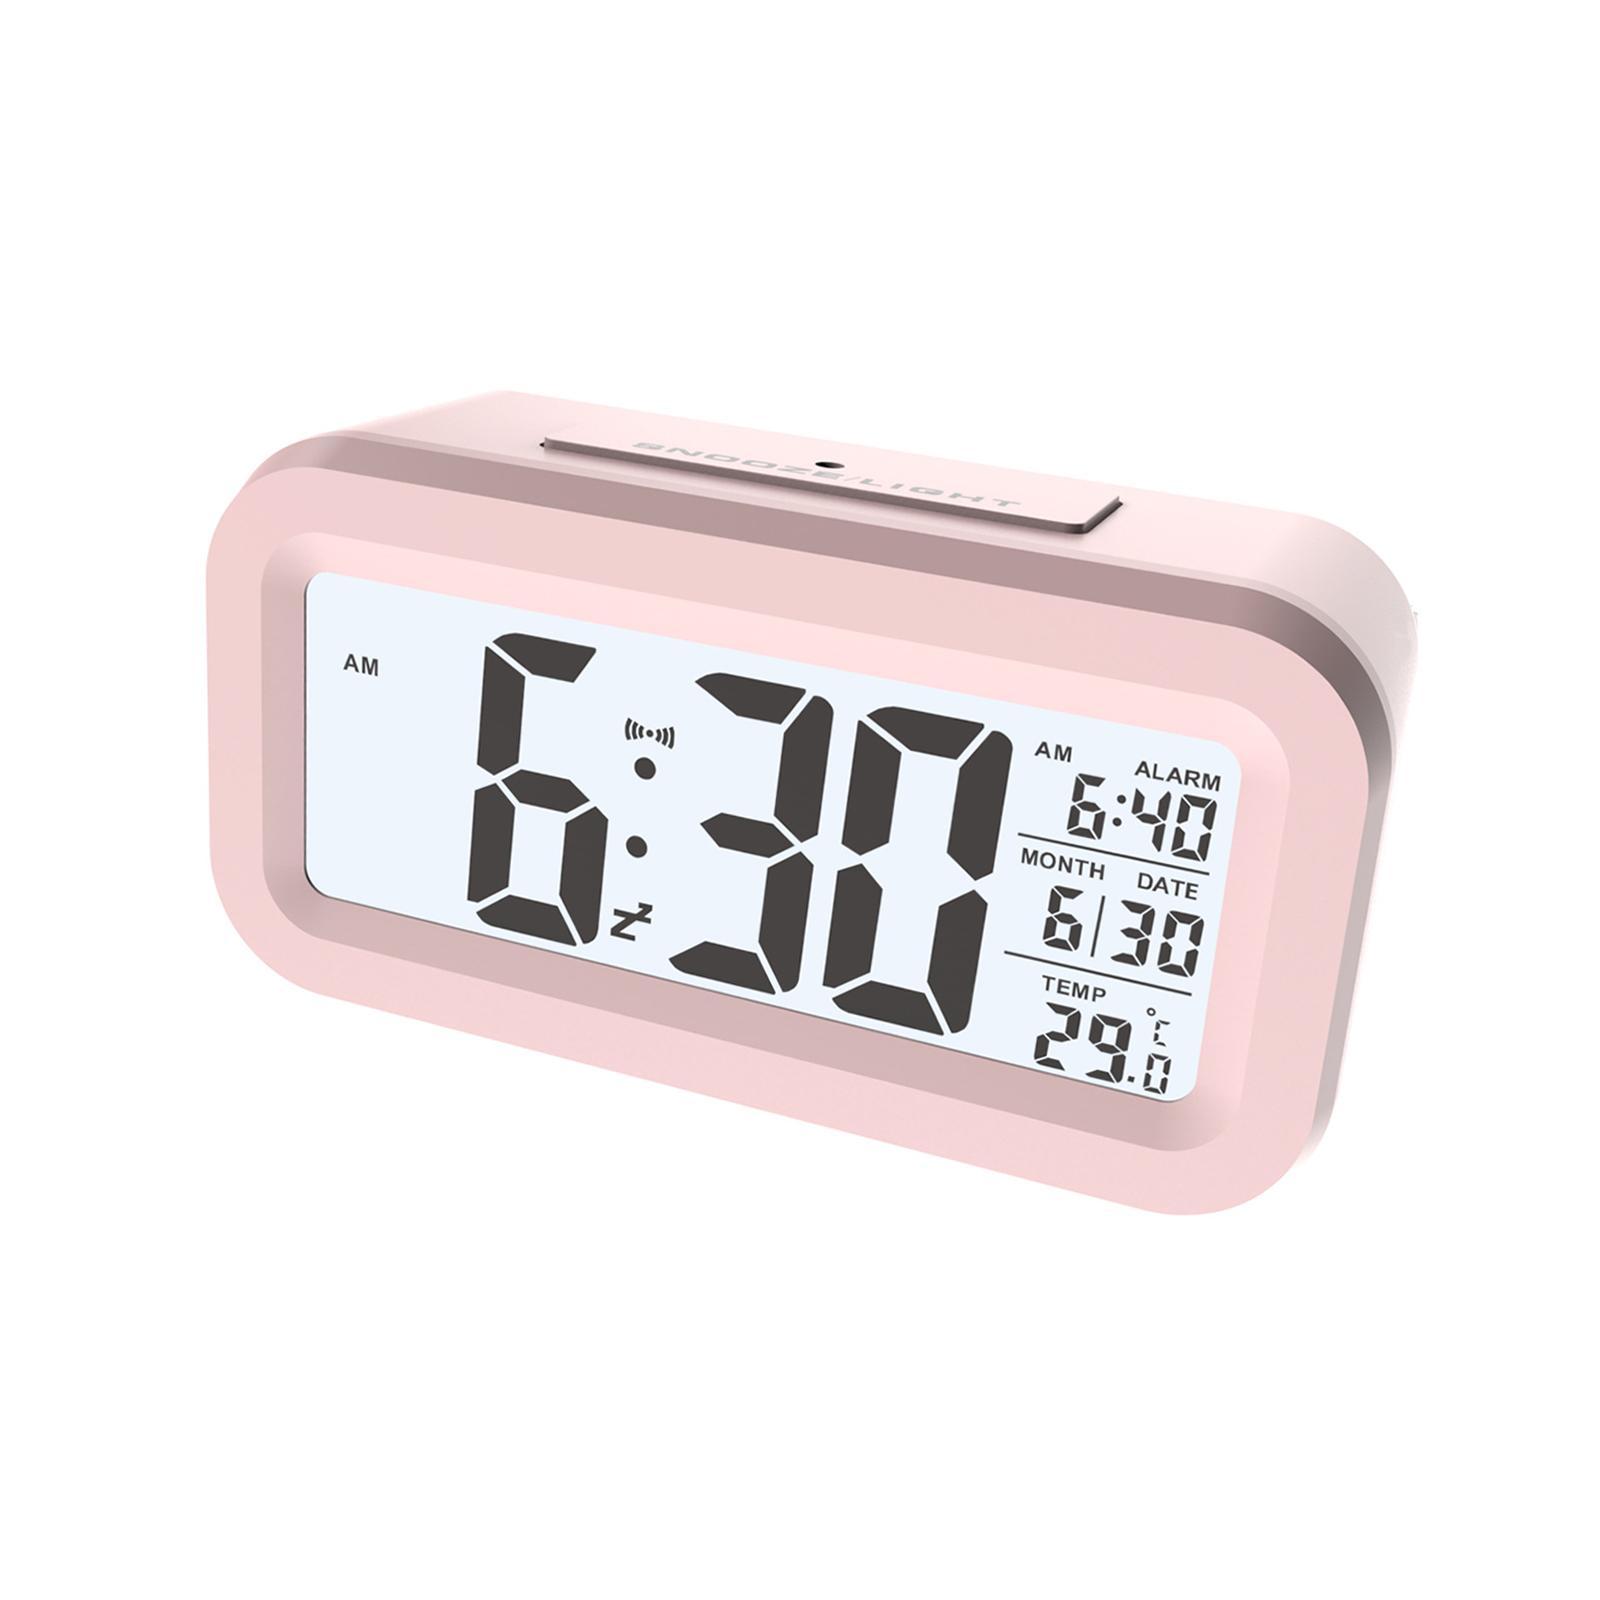 Digital Alarm Clock with Indoor Temperature Date for Office Desktoop Bedroom